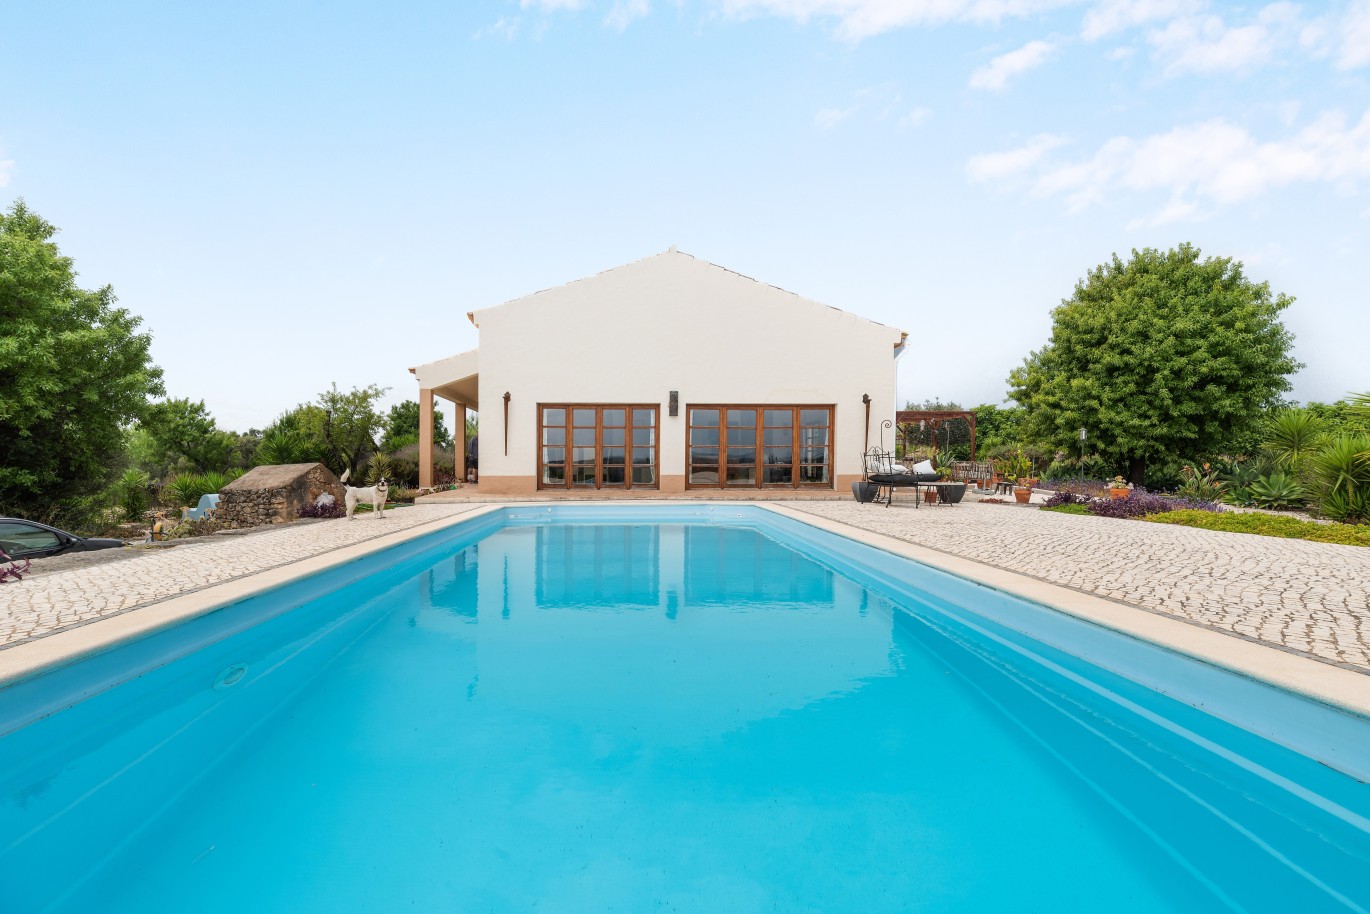 Moradia V3 com piscina, para venda, em Mexilhoeira Grande, Algarve_227522